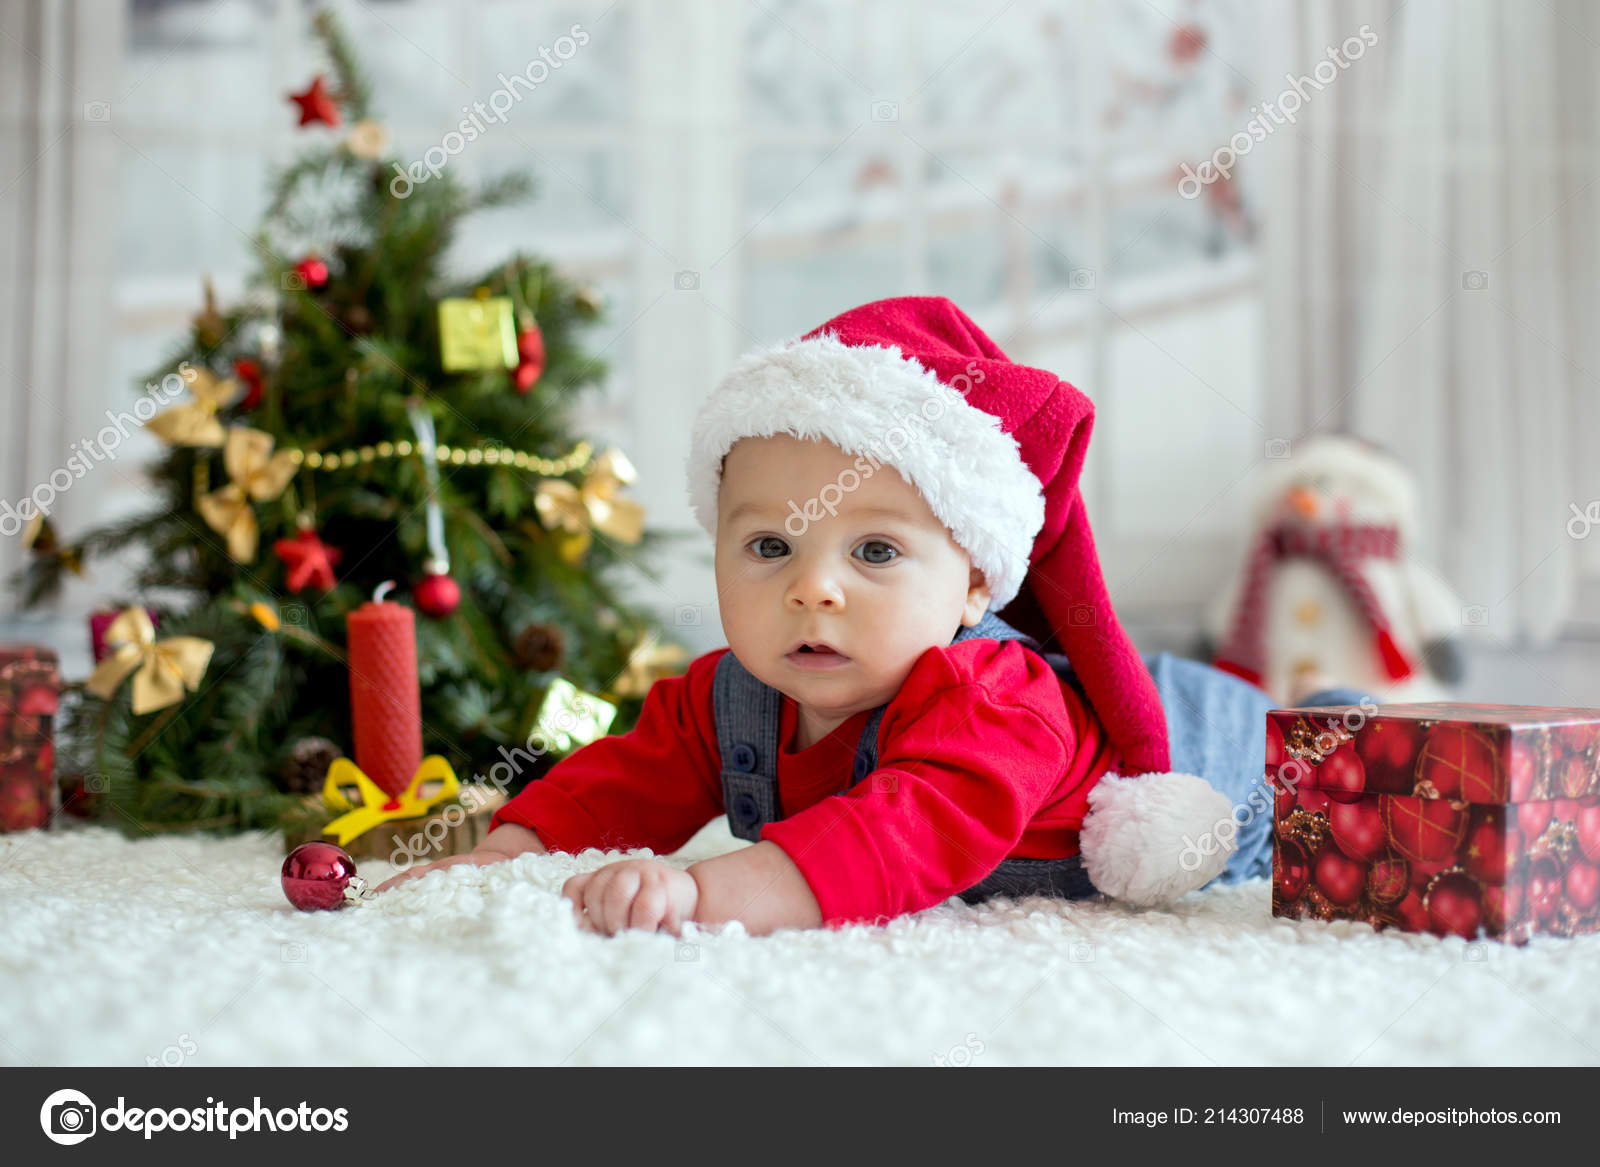 NANYUAYA Baby Xmas Outfit Santa Claus Print Long Sleeve Dress Top+Pants Clothes Set